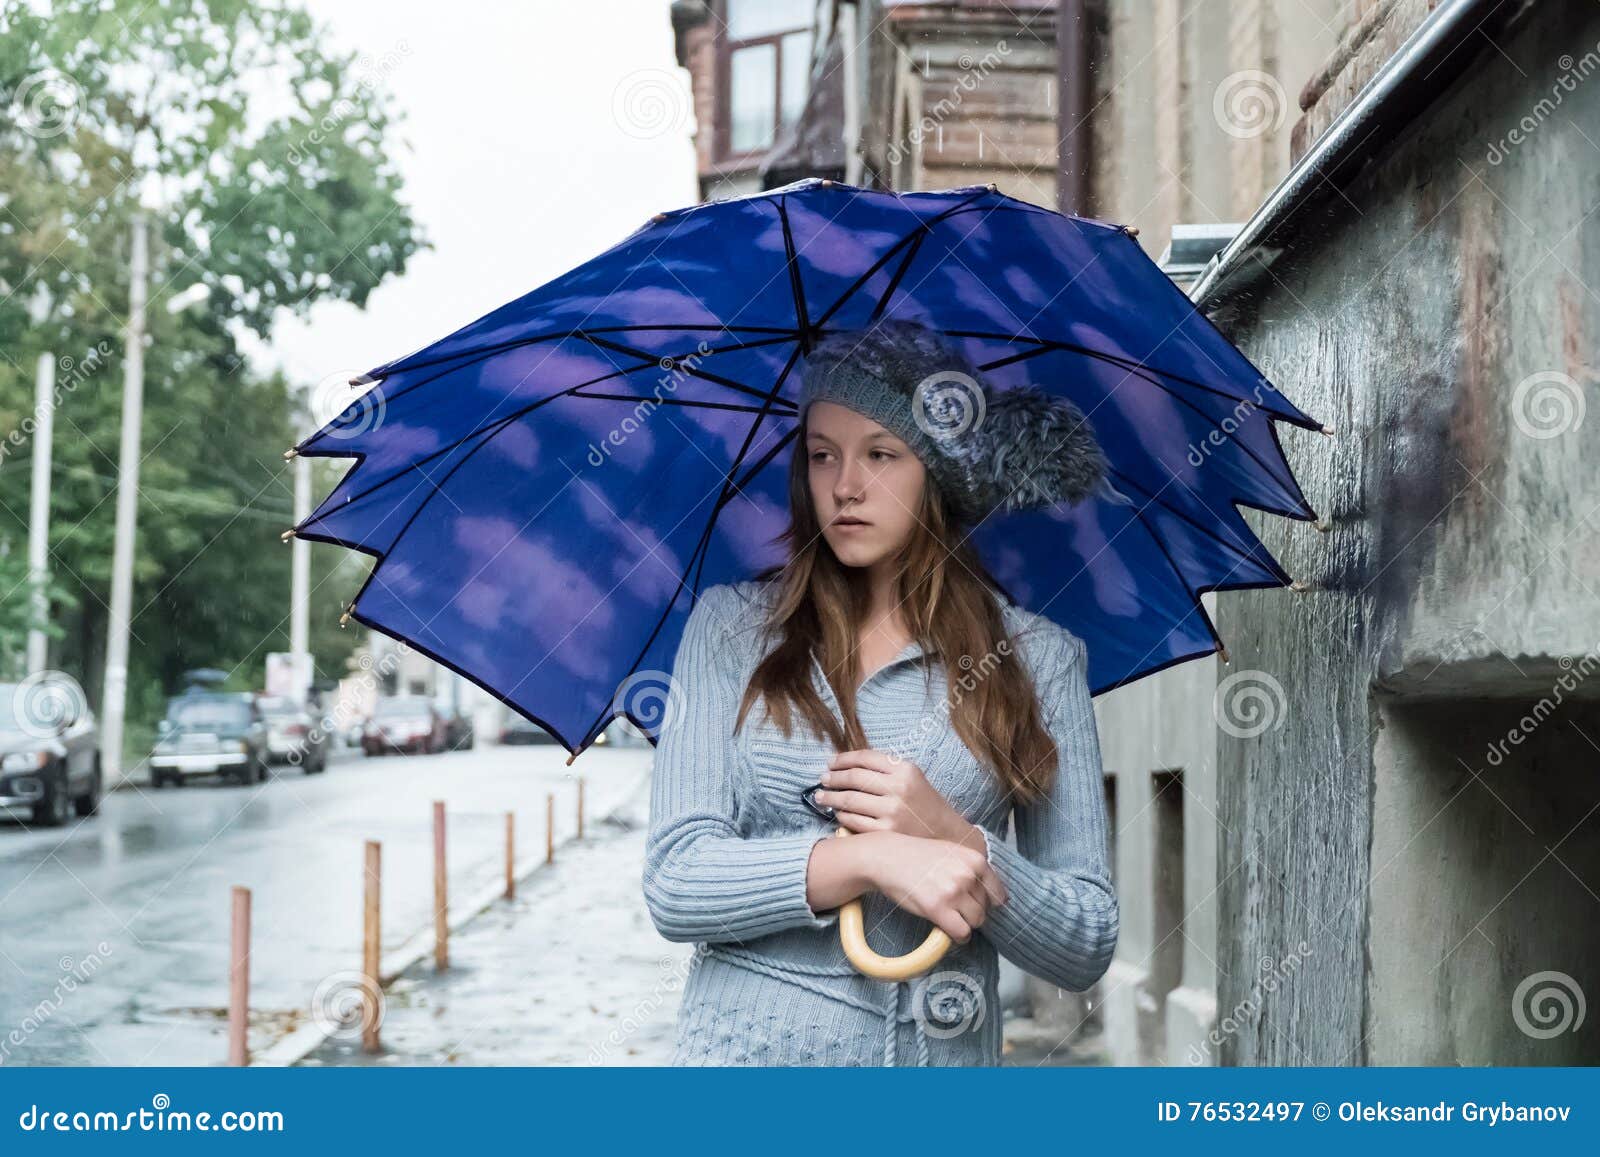 Sad Woman Under An Umbrella Stock Image Image Of Drop